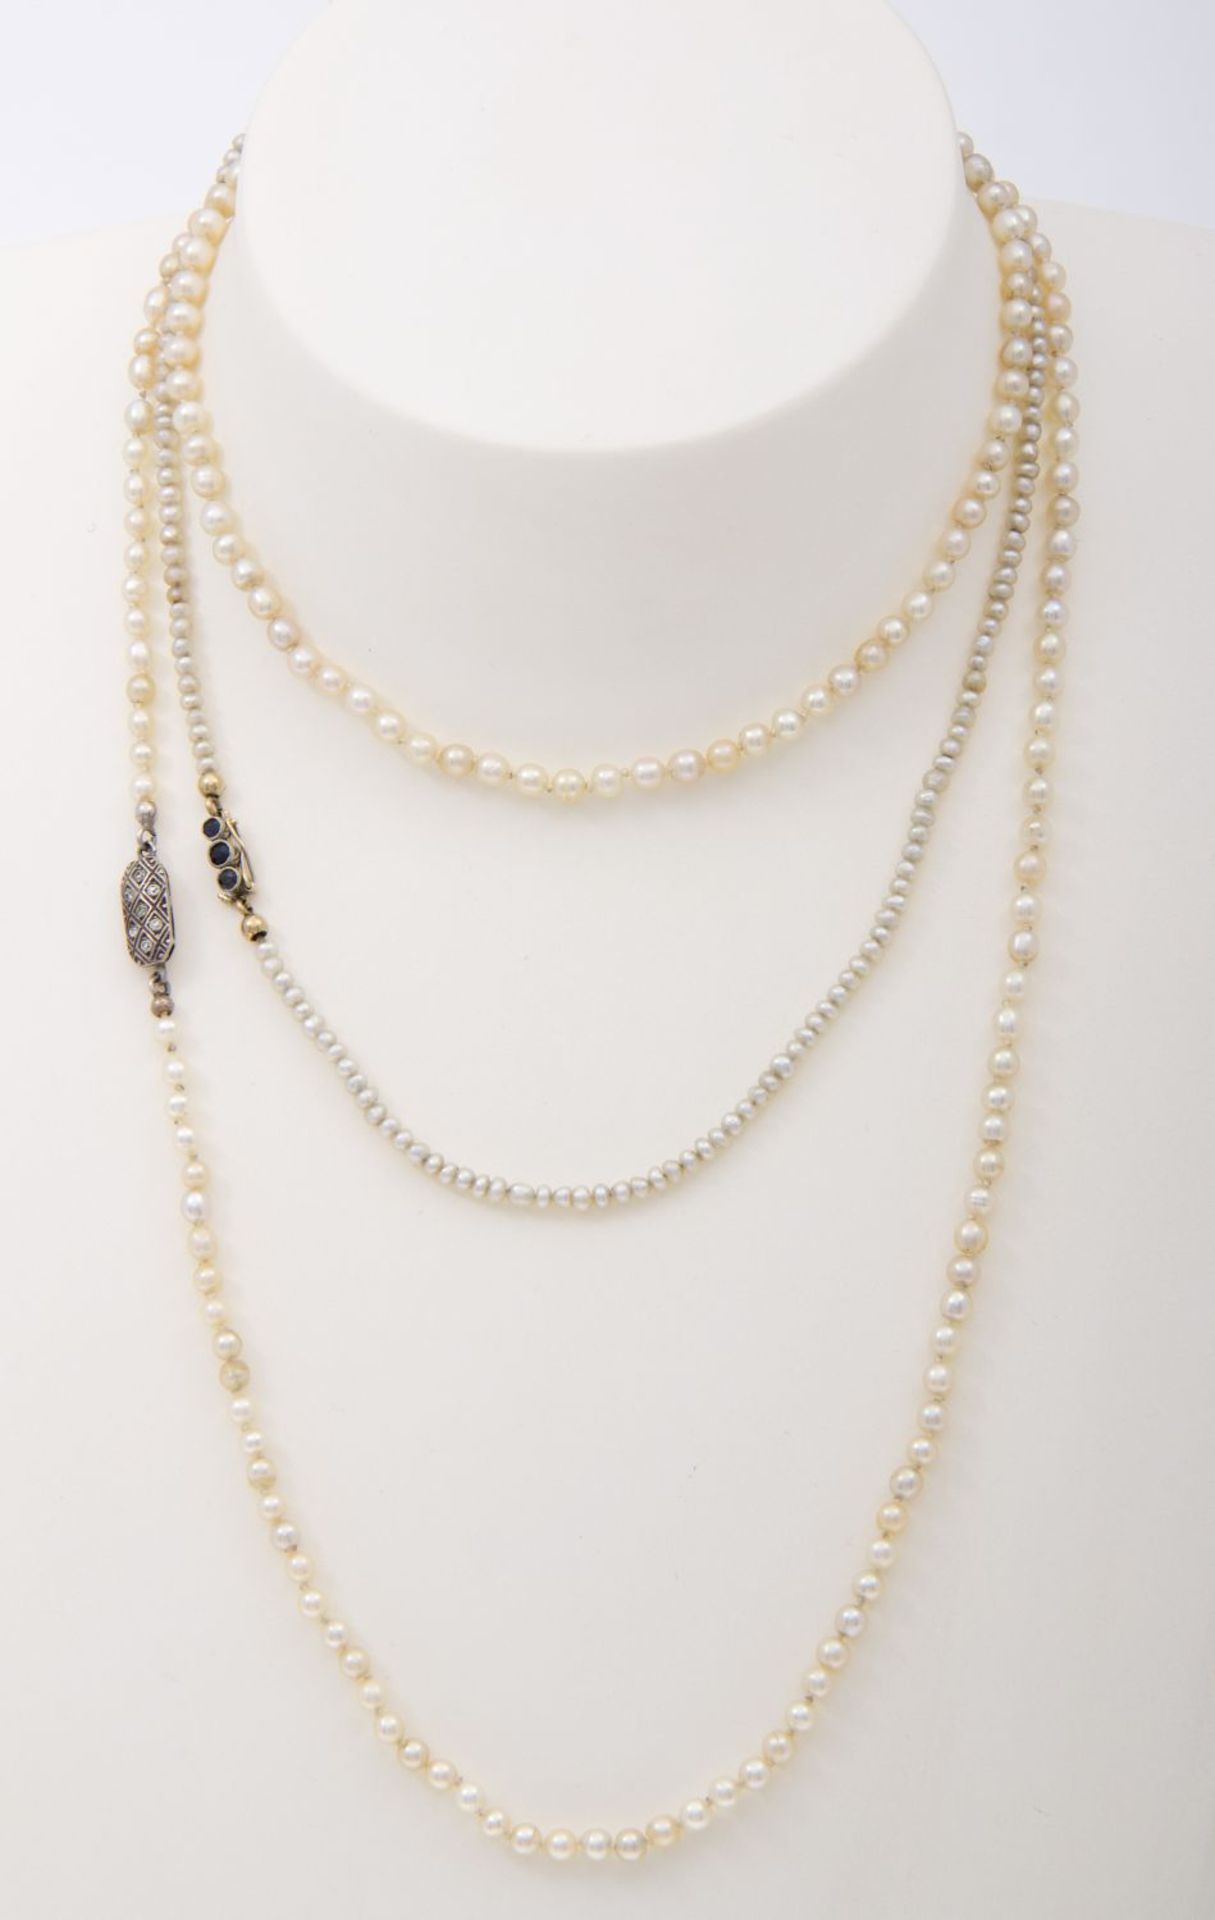 Zwei zarte PerlenkettenWeiße Perlchen, D. bis ca. 3,5 mm. Verschluss aus Silber 835 bzw. Gelbgold